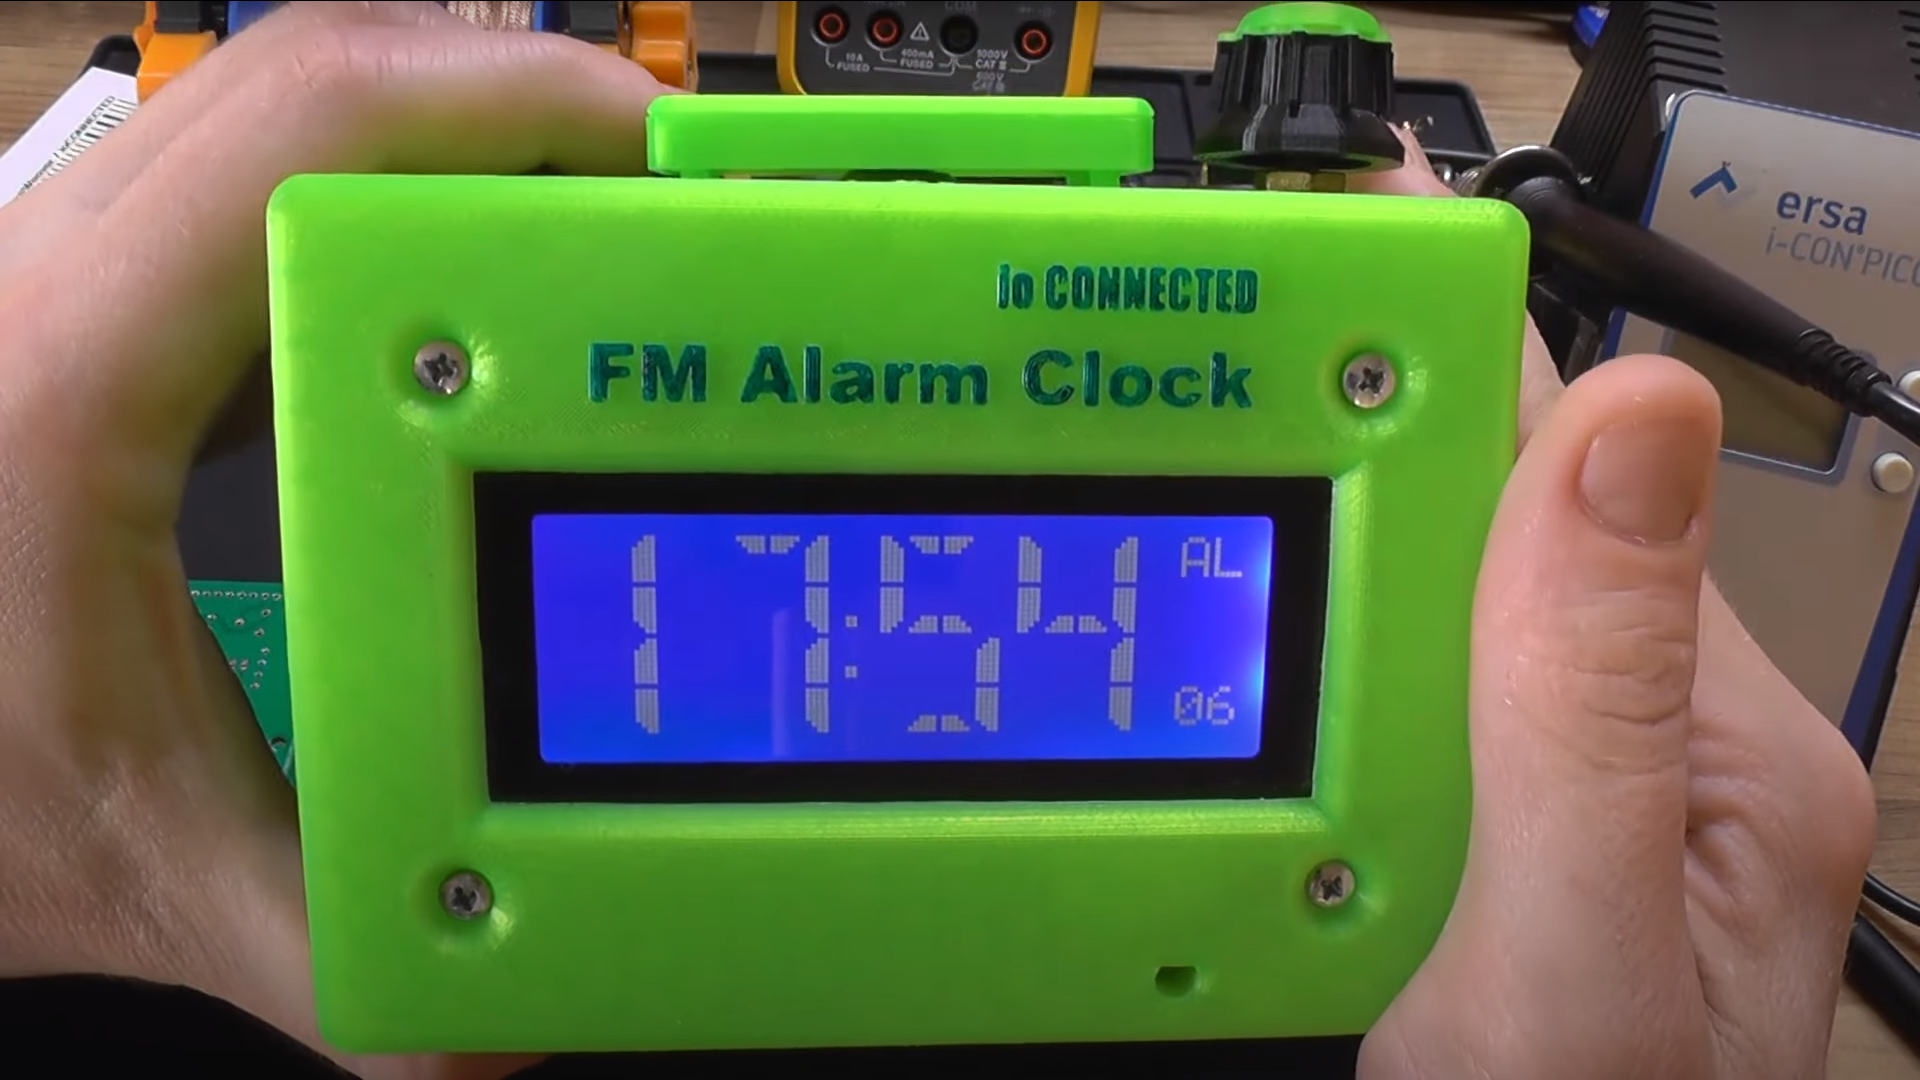 IO Connected Radio Alarm Clock